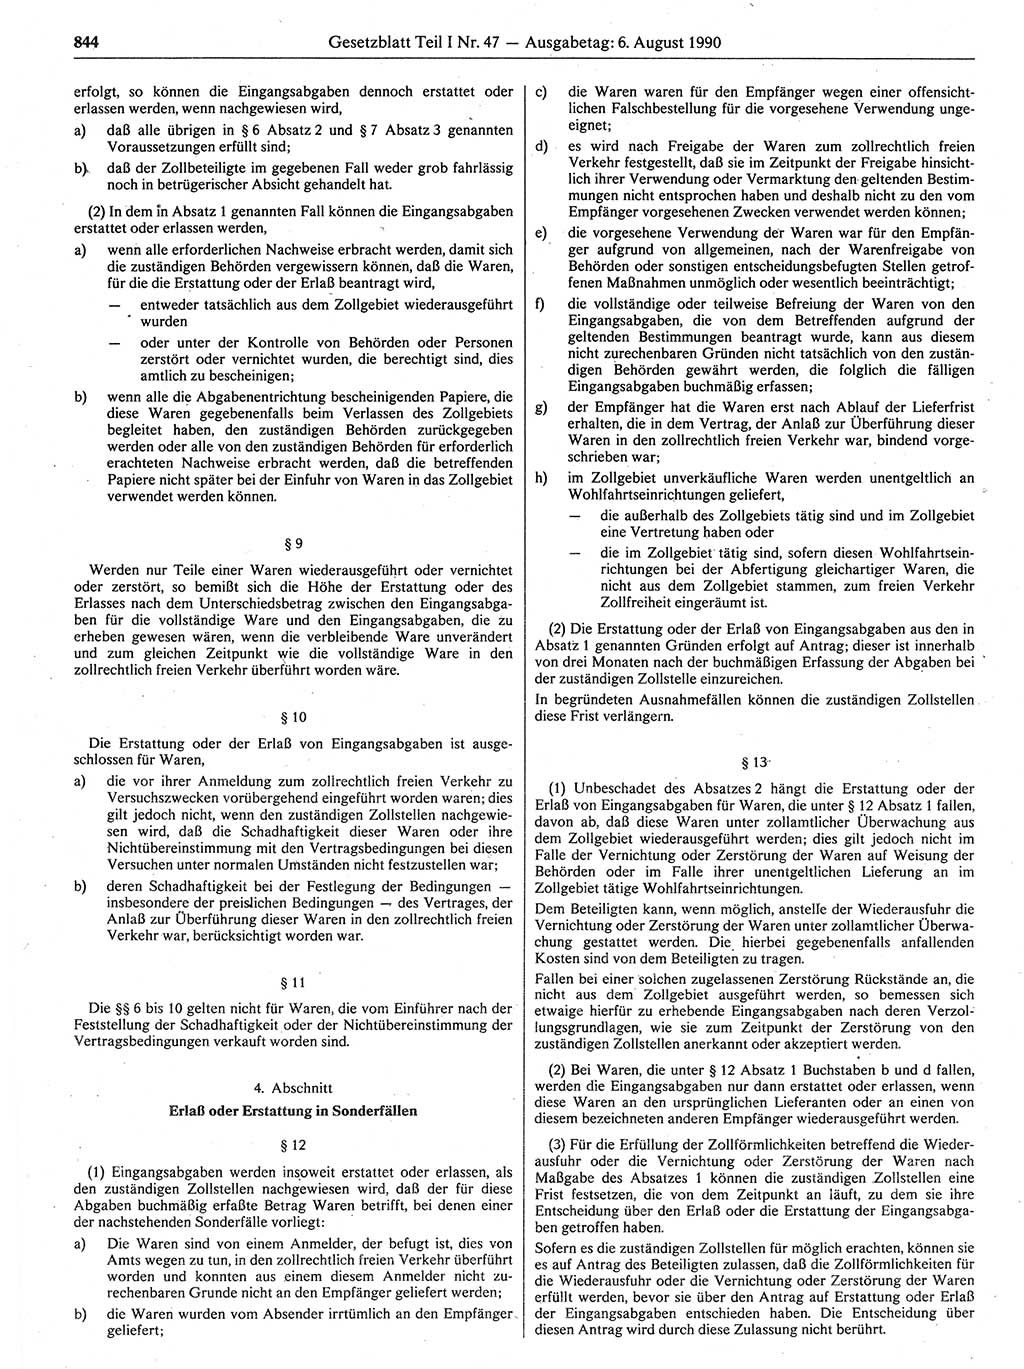 Gesetzblatt (GBl.) der Deutschen Demokratischen Republik (DDR) Teil Ⅰ 1990, Seite 844 (GBl. DDR Ⅰ 1990, S. 844)